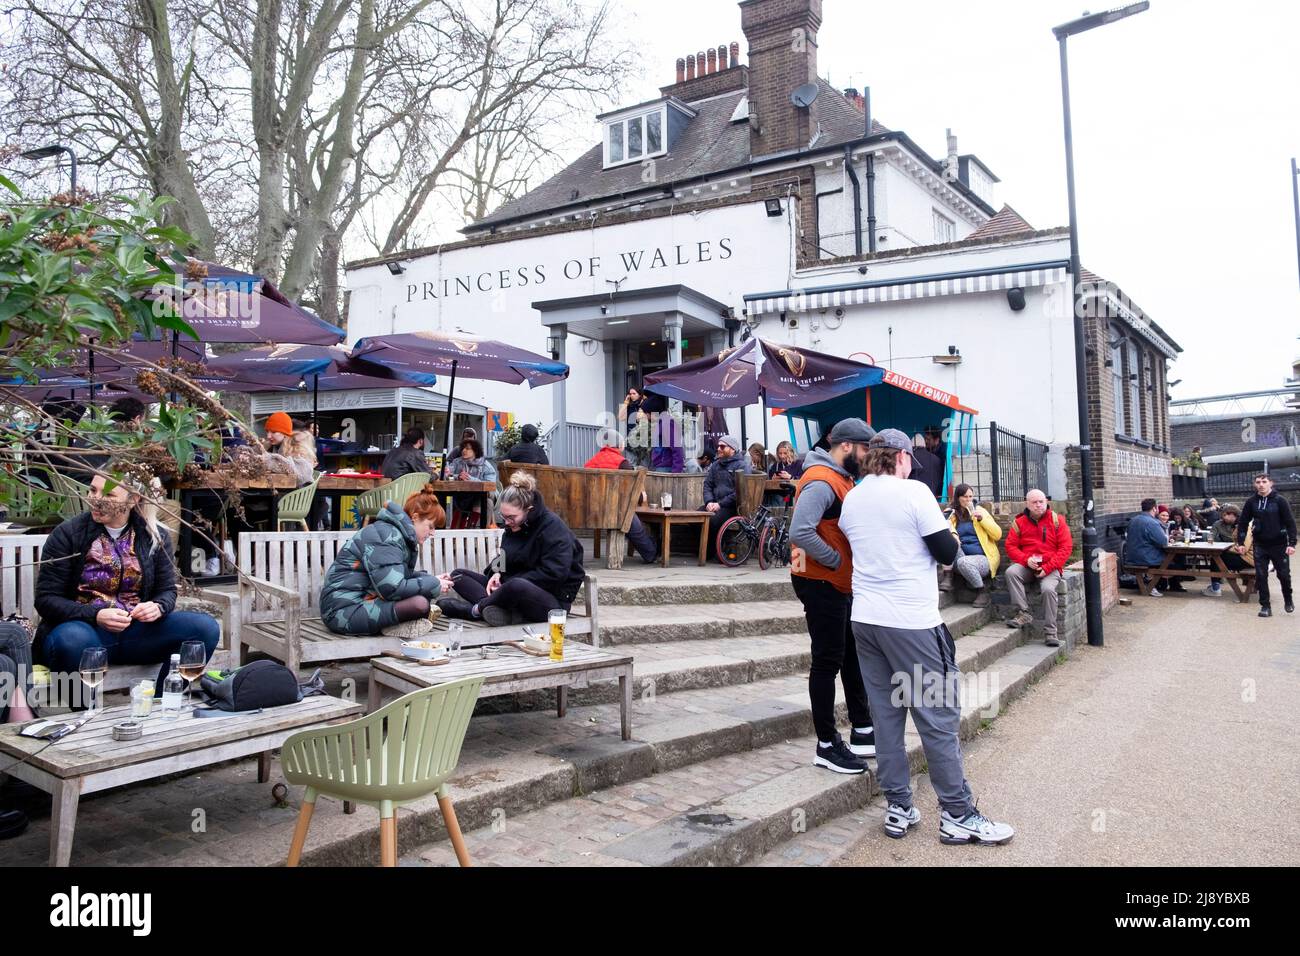 Menschen sitzen entspannt trinken und stehen vor dem Princess of Wales Pub im Frühjahr auf dem Fluss Lea Clapton London E5 England Großbritannien KATHY DEWITT Stockfoto